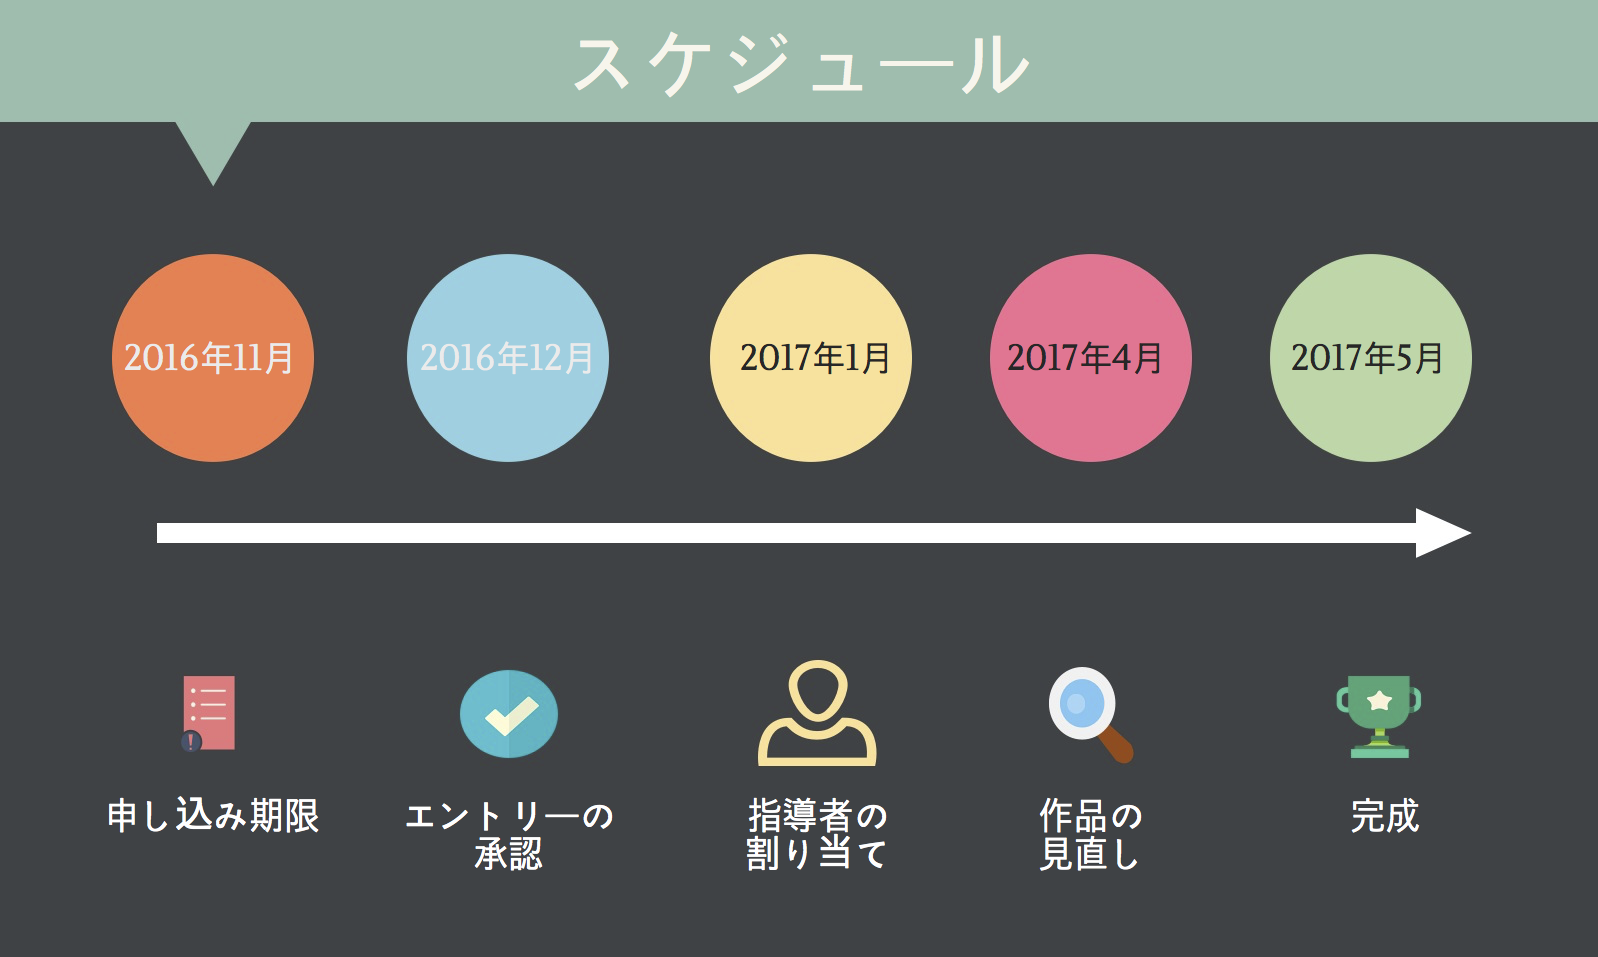 coding-for-life-jp-timeline